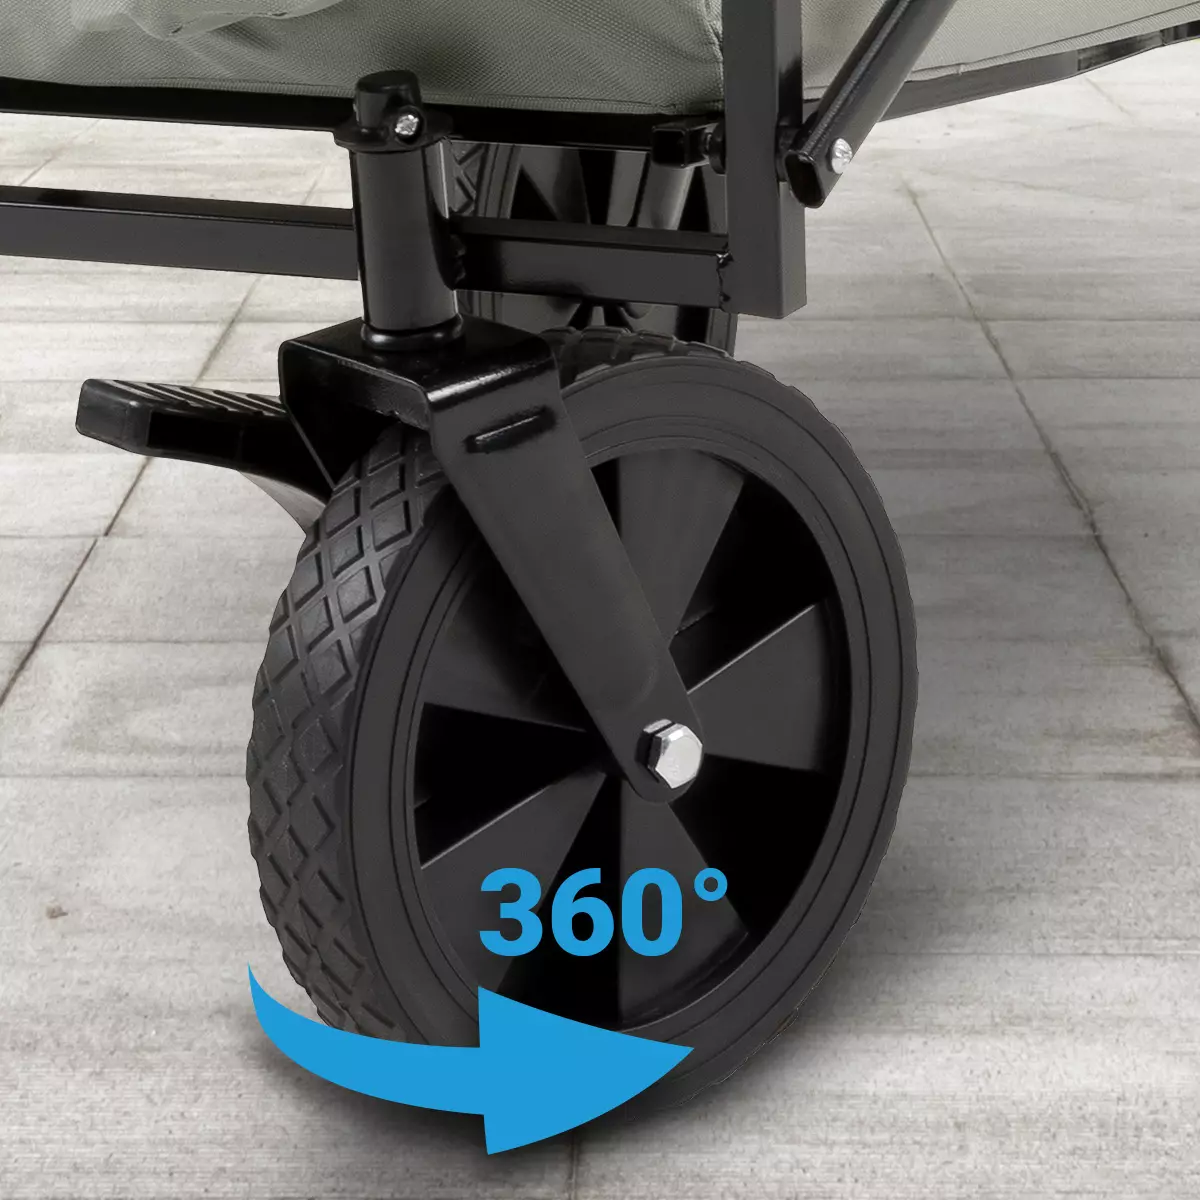 Powiększone przednie koło składanego wózka ręcznego, które można obracać o 360 stopni